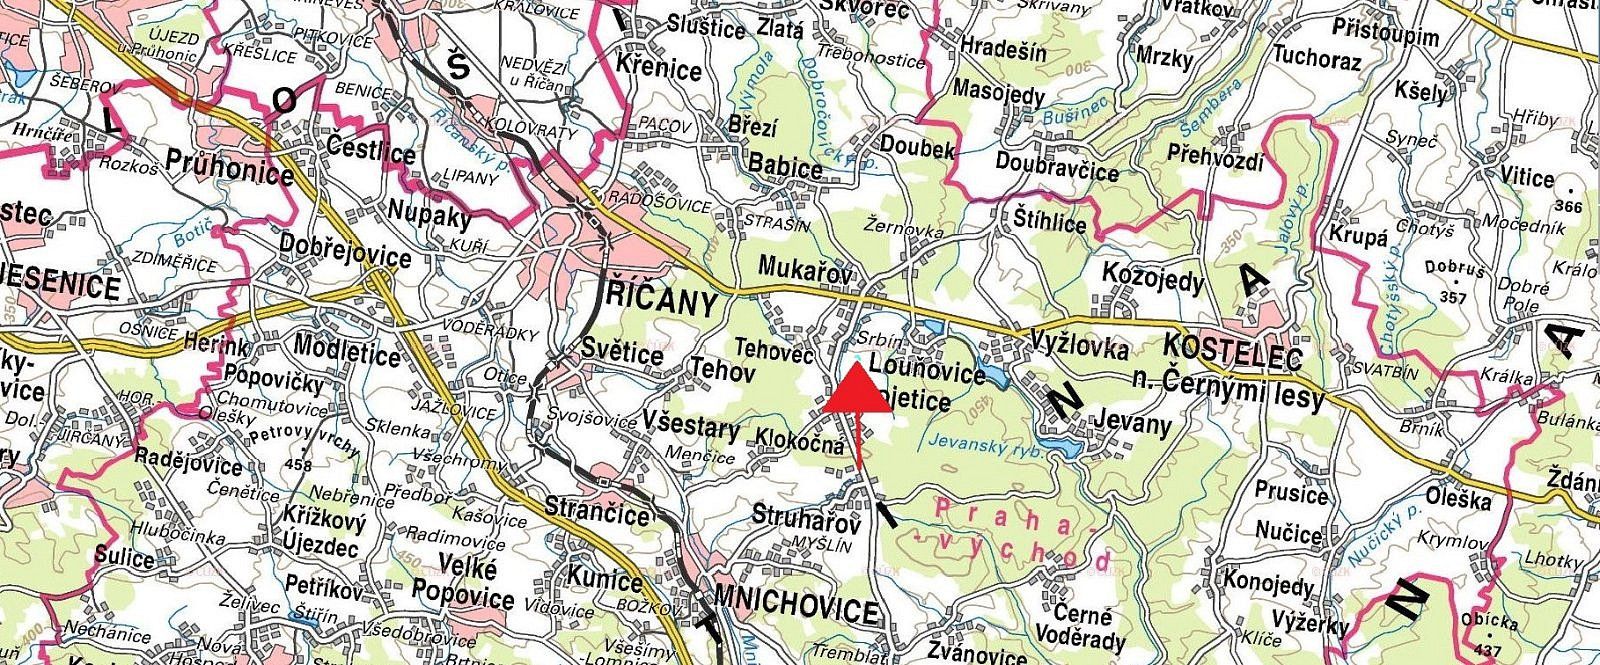 Mukařov - Srbín, okres Praha-východ